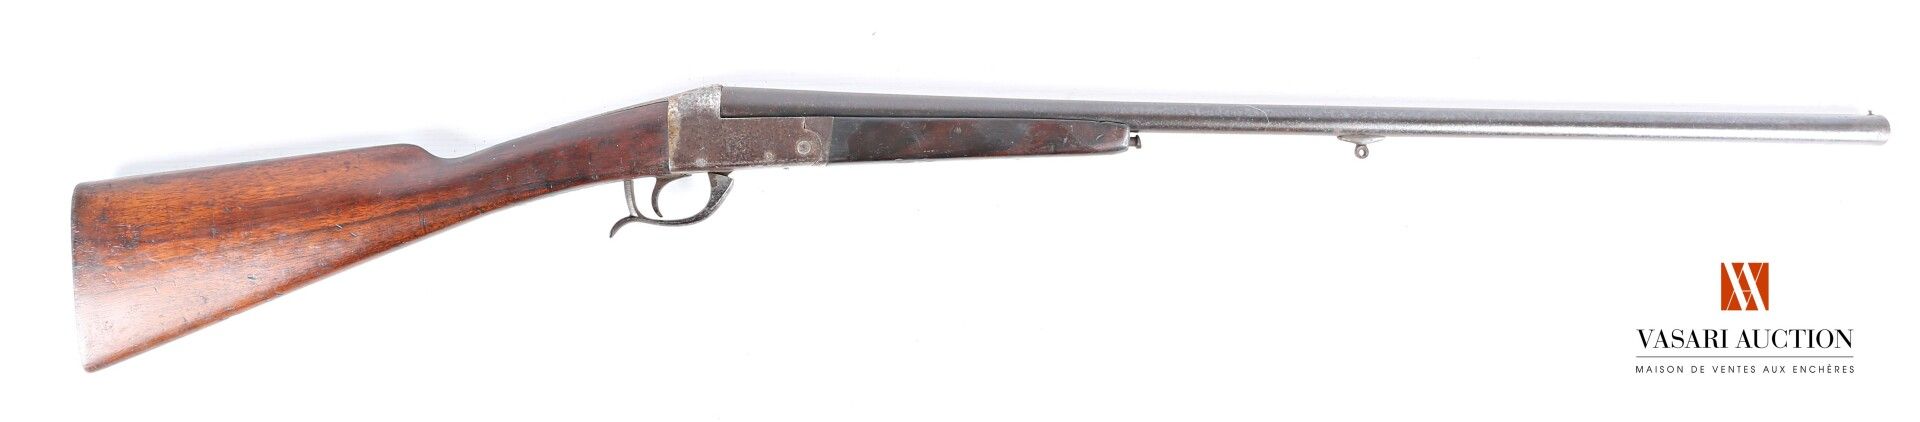 Null 单管折叠式霰弹枪SIMPLARM，口径20-65，枪管70厘米，英式枪托35.5厘米，磨损，氧化，木材和古铜色有使用痕迹，长109厘米，编号984，（&hellip;